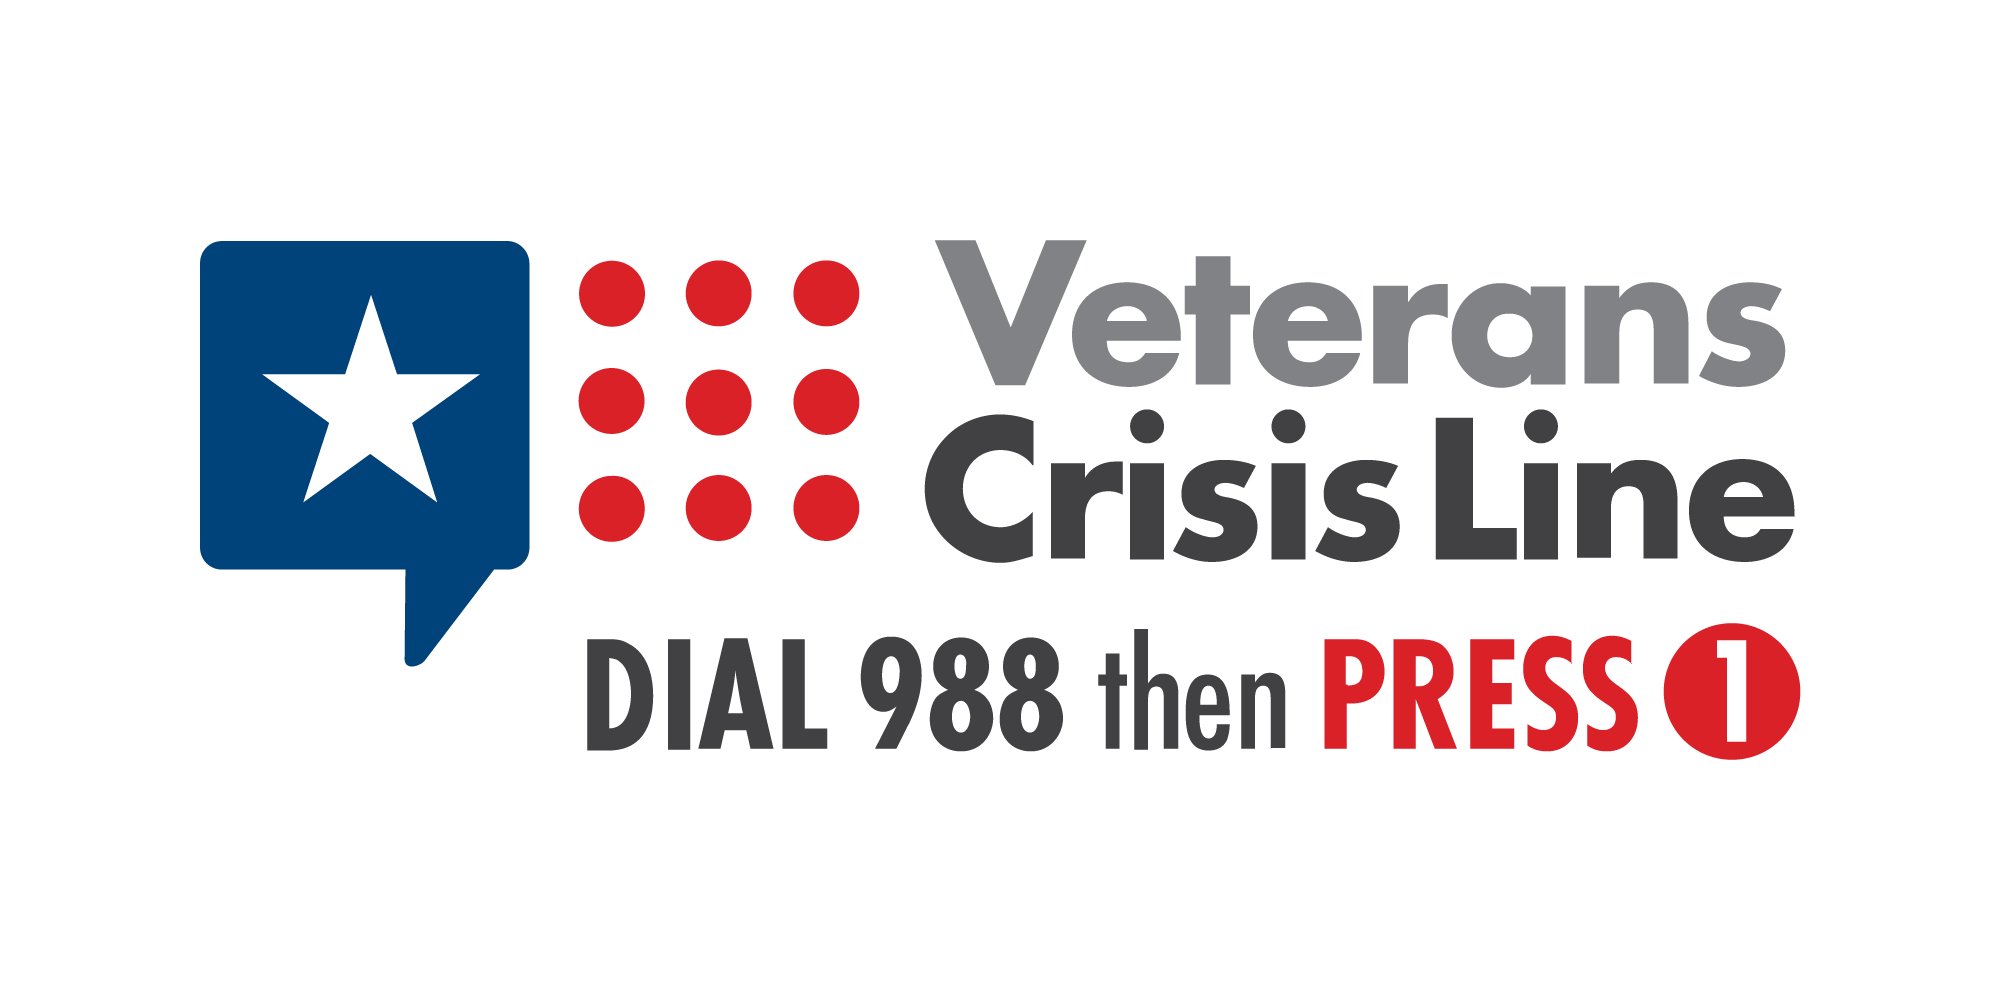 Veterans Crisis Line Dial 988 then Press 1